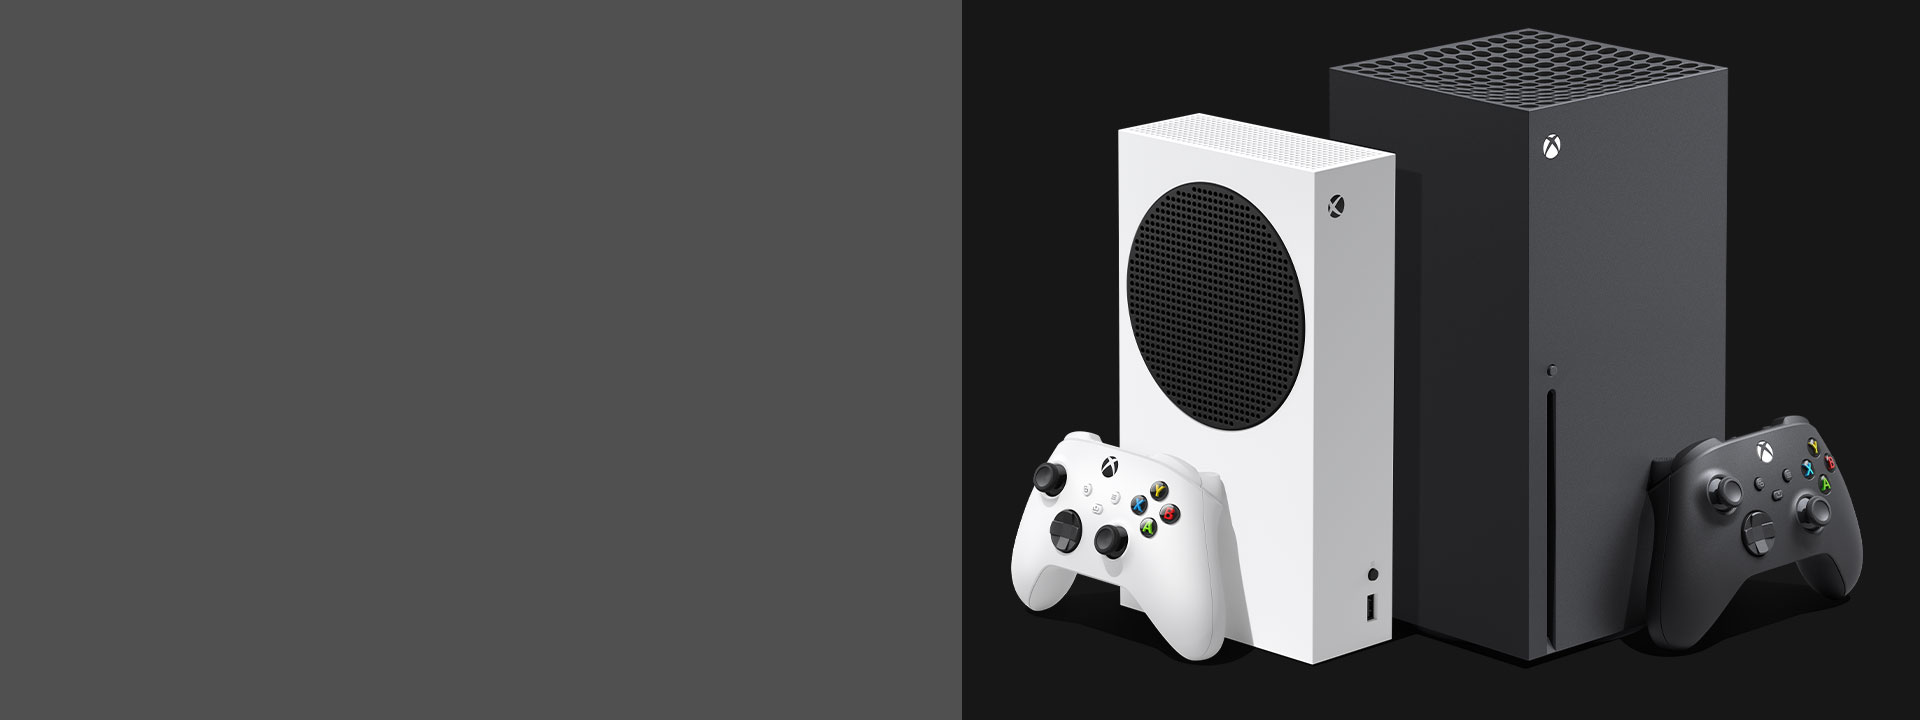 Les consoles Xbox Series X et Xbox Series S côte à côte.